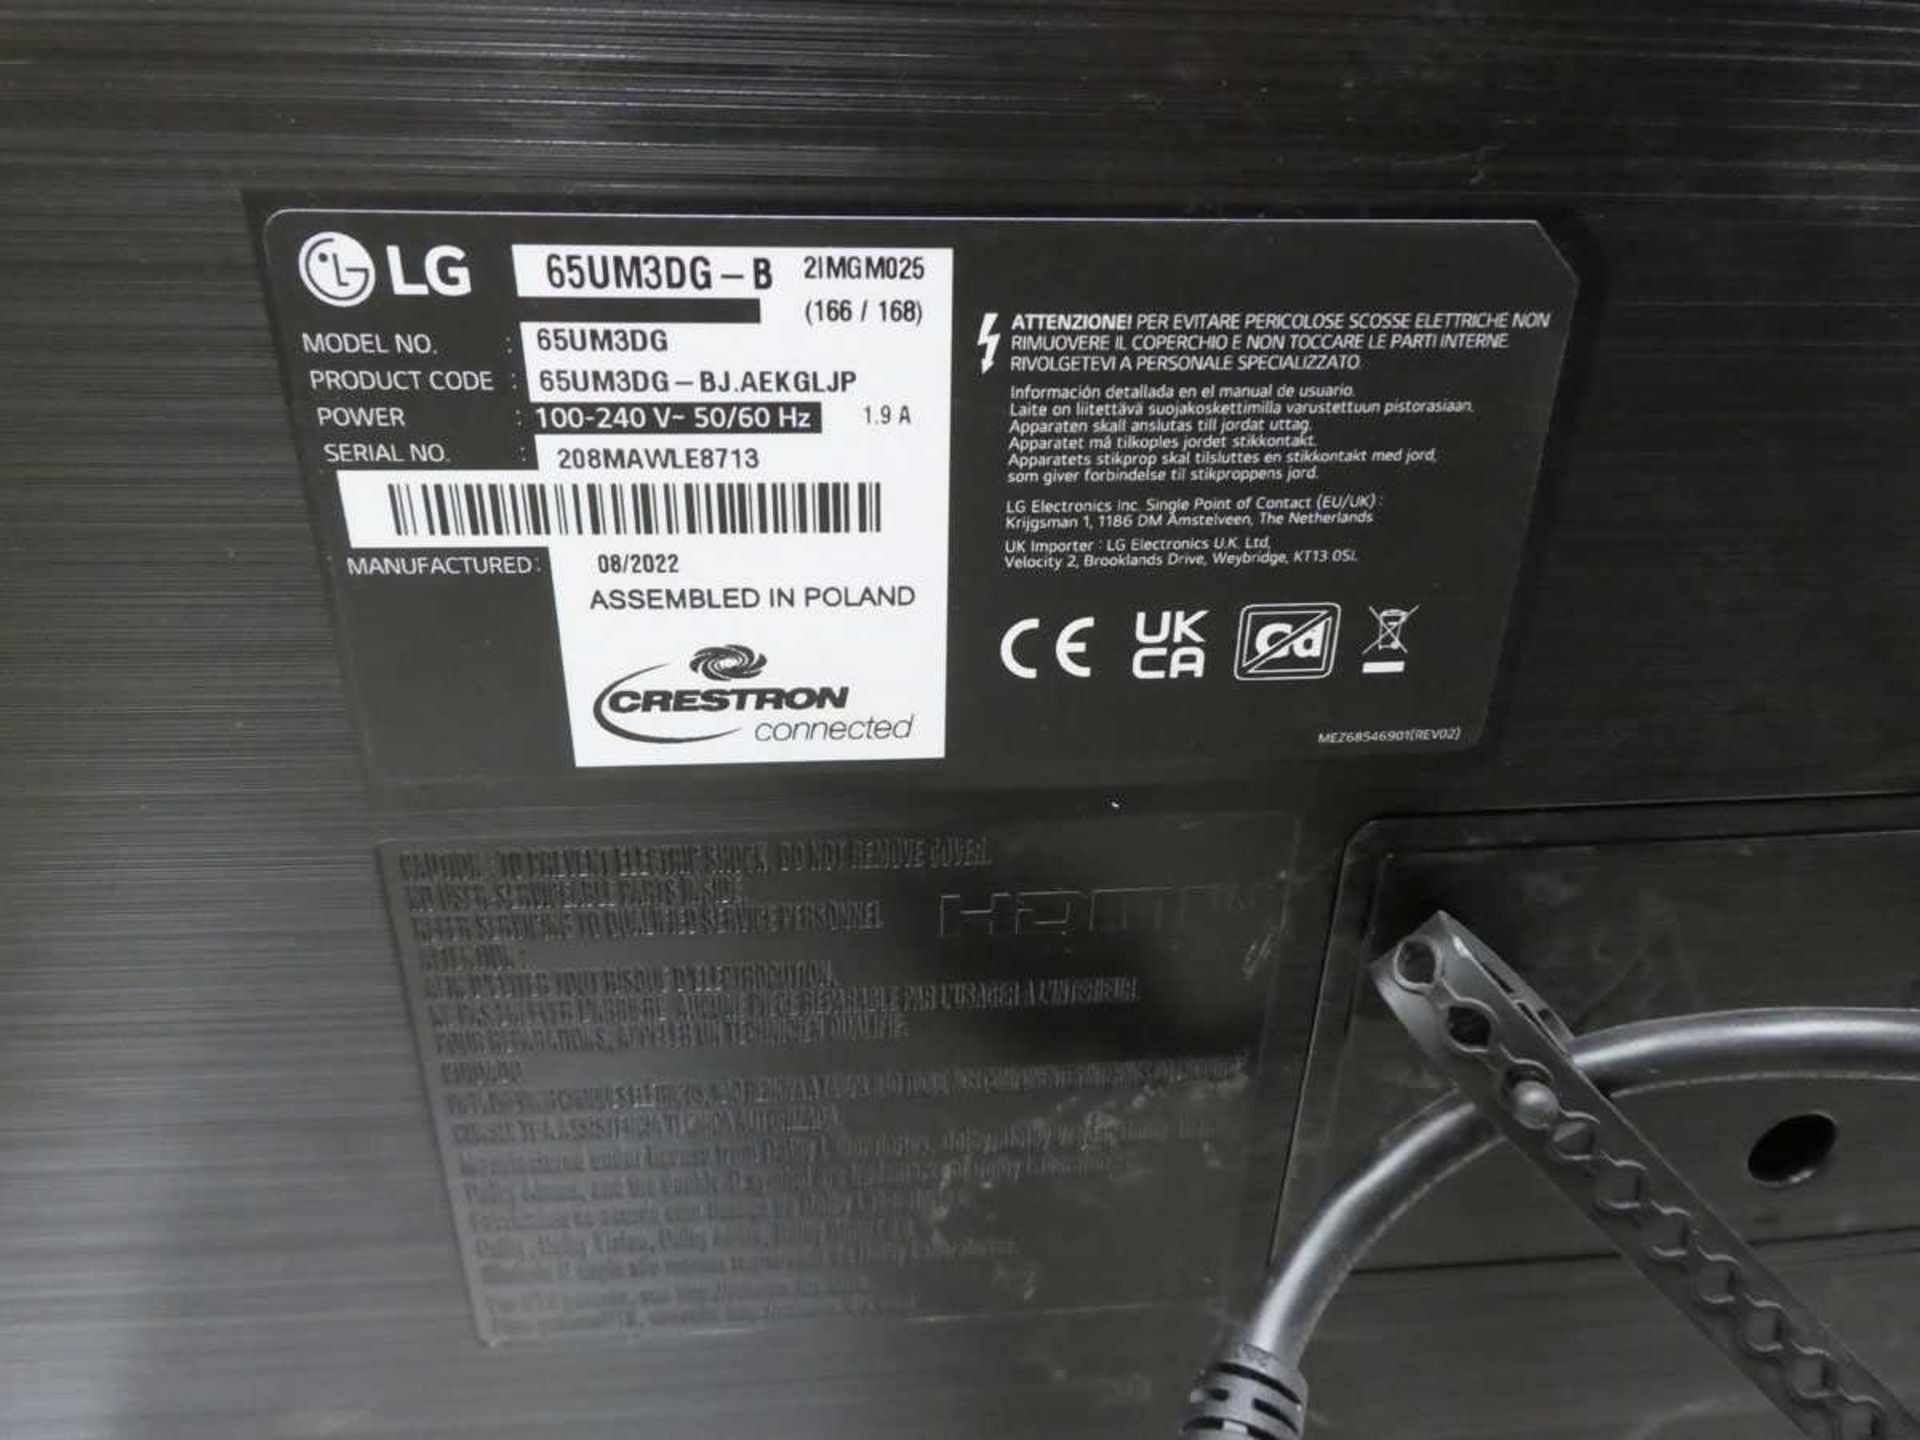 LG Model 65UM3DG 65" Digital Signage Display 4K UHD LED Monitor with detachable remote sensor, - Image 2 of 3